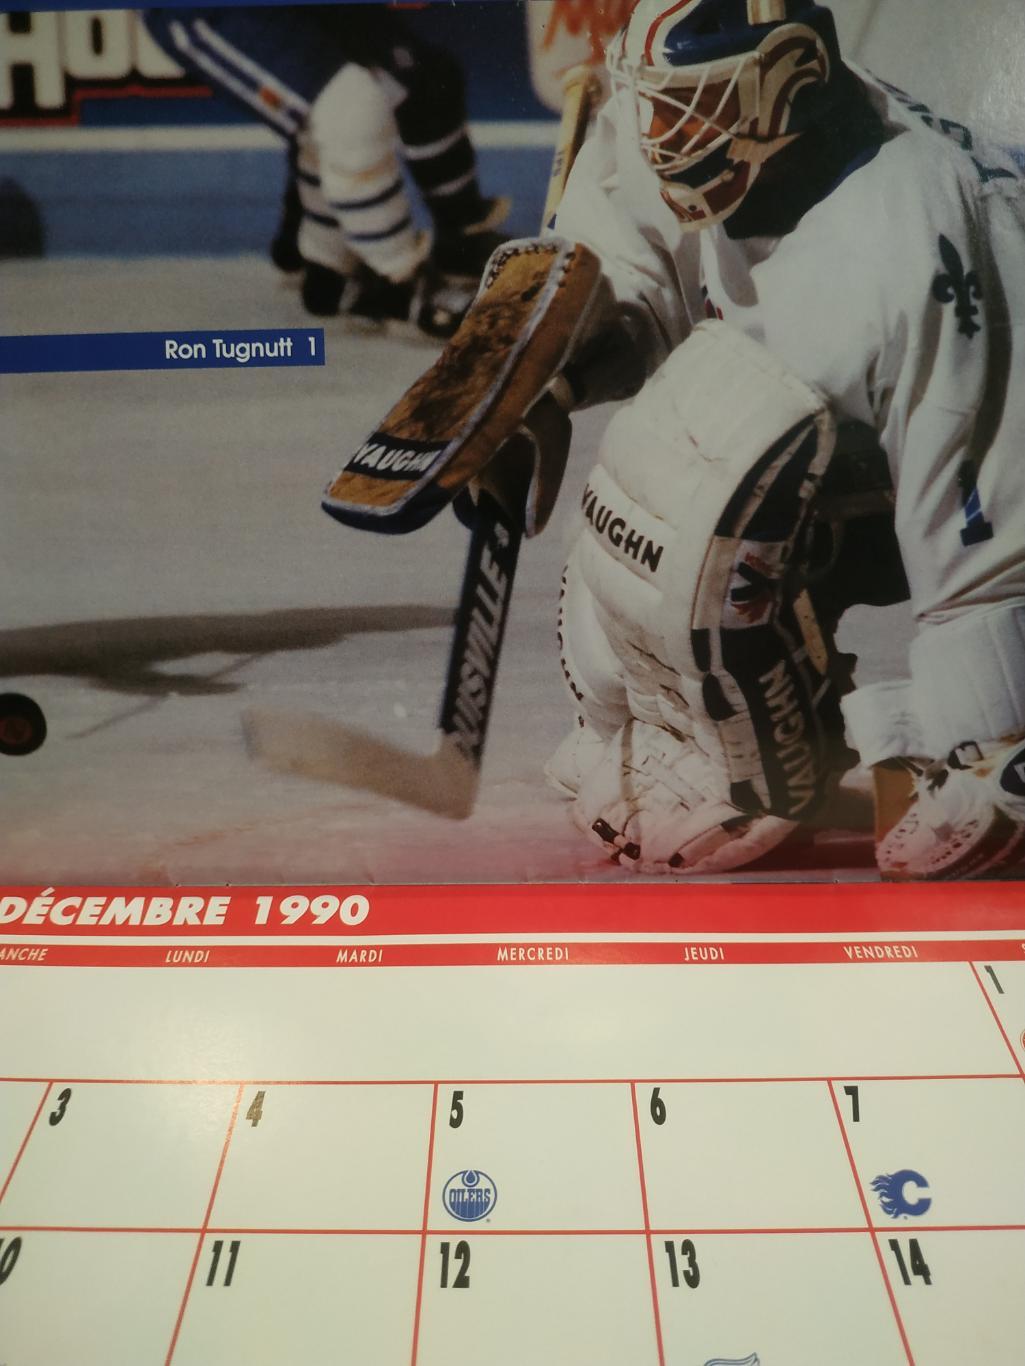 ХОККЕЙ КАЛЕНДАРЬ НХЛ КВЕБЕК НОРДИКС 1990-91 NHL LES NORDIQUES OFFICIAL CALENDAR 3